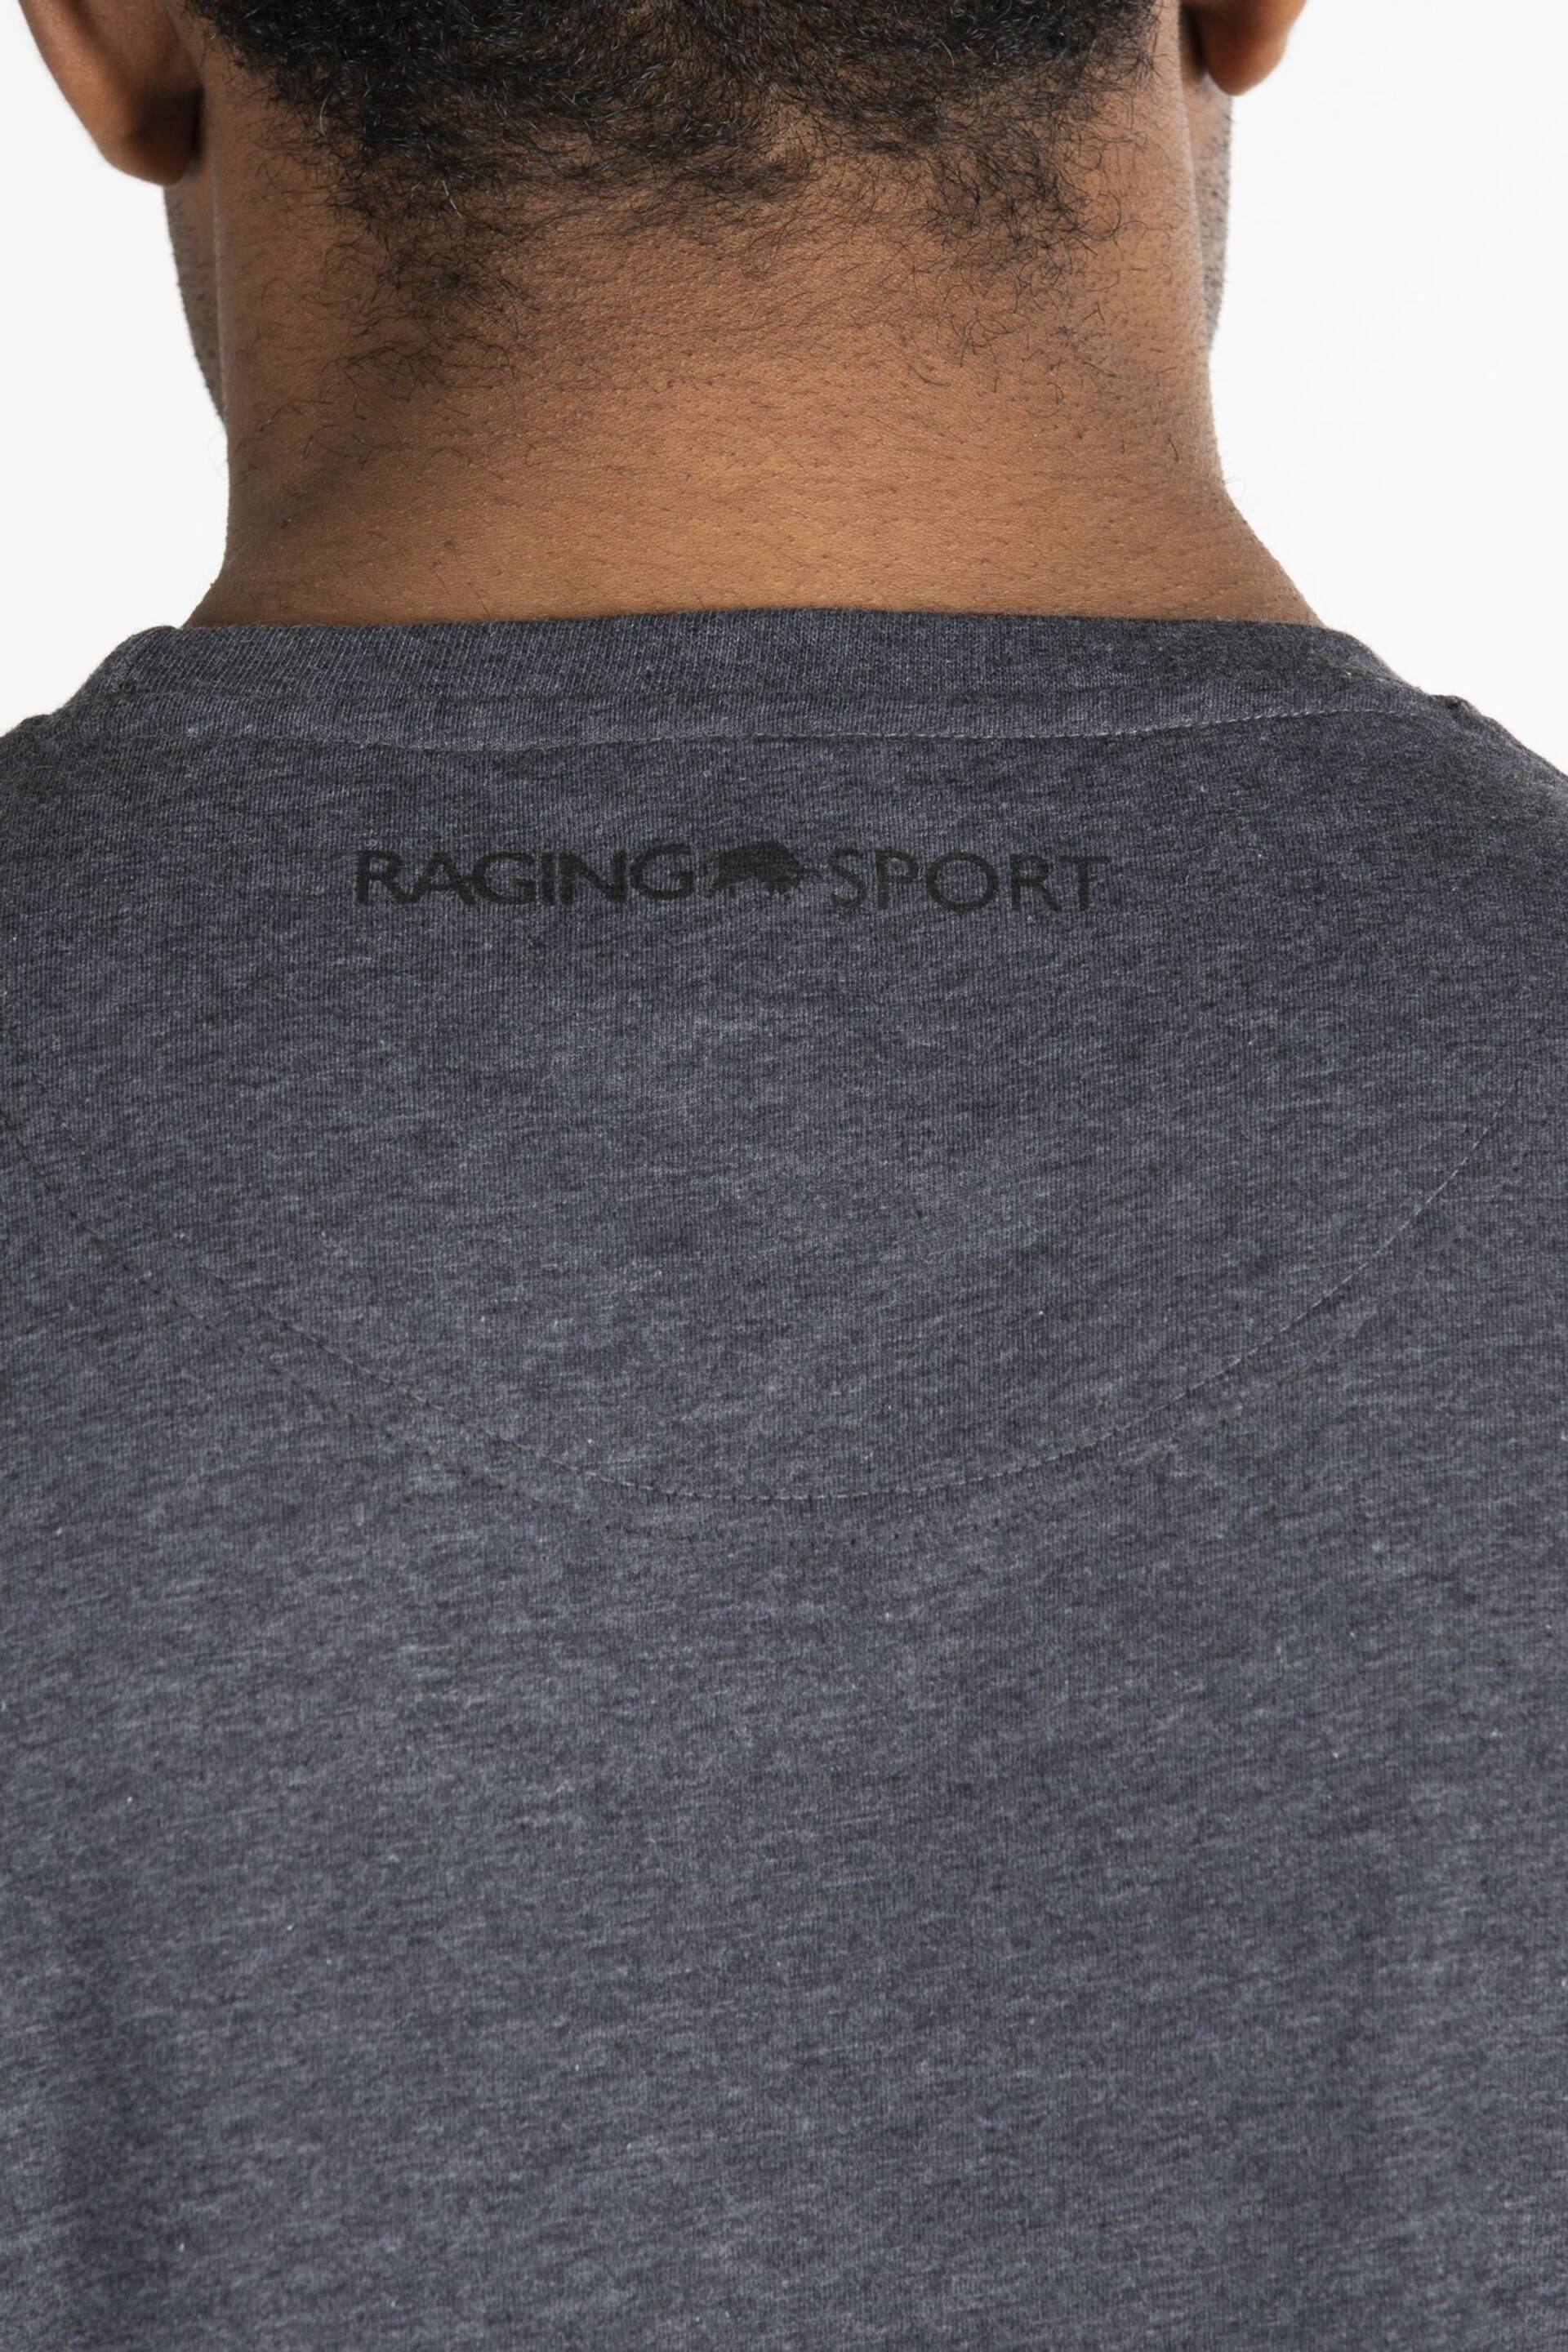 Raging Bull Grey Sport Block T-Shirt - Image 3 of 4